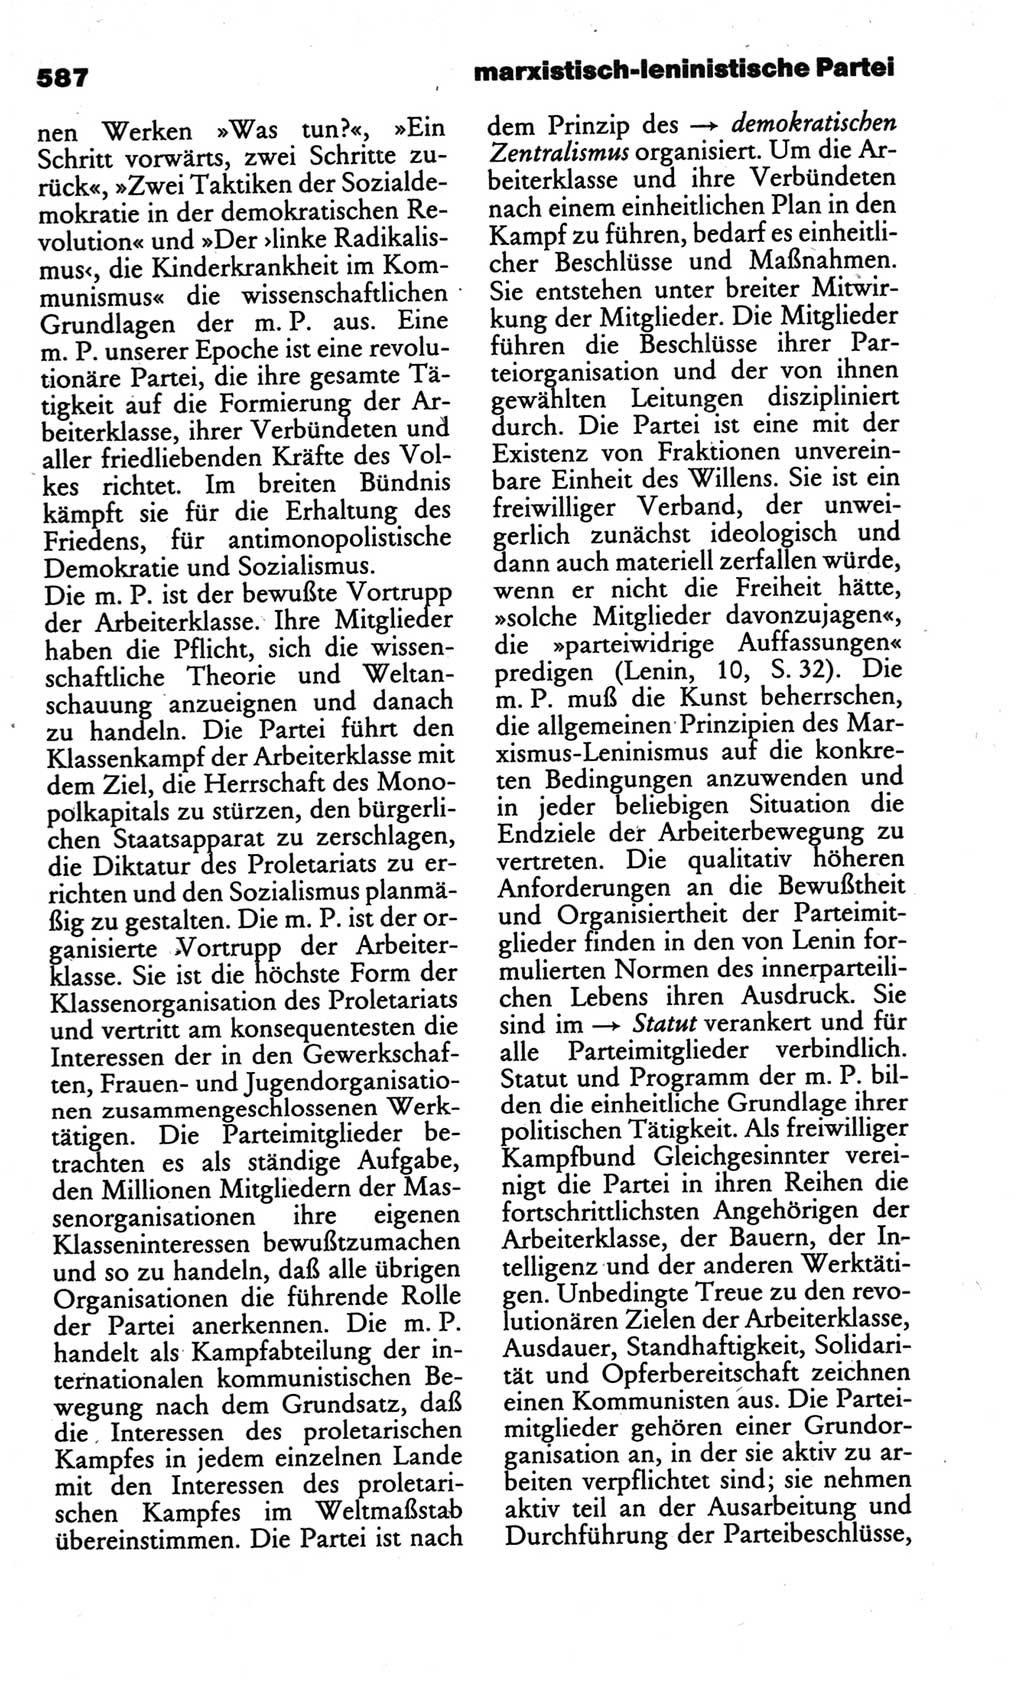 Kleines politisches Wörterbuch [Deutsche Demokratische Republik (DDR)] 1986, Seite 587 (Kl. pol. Wb. DDR 1986, S. 587)